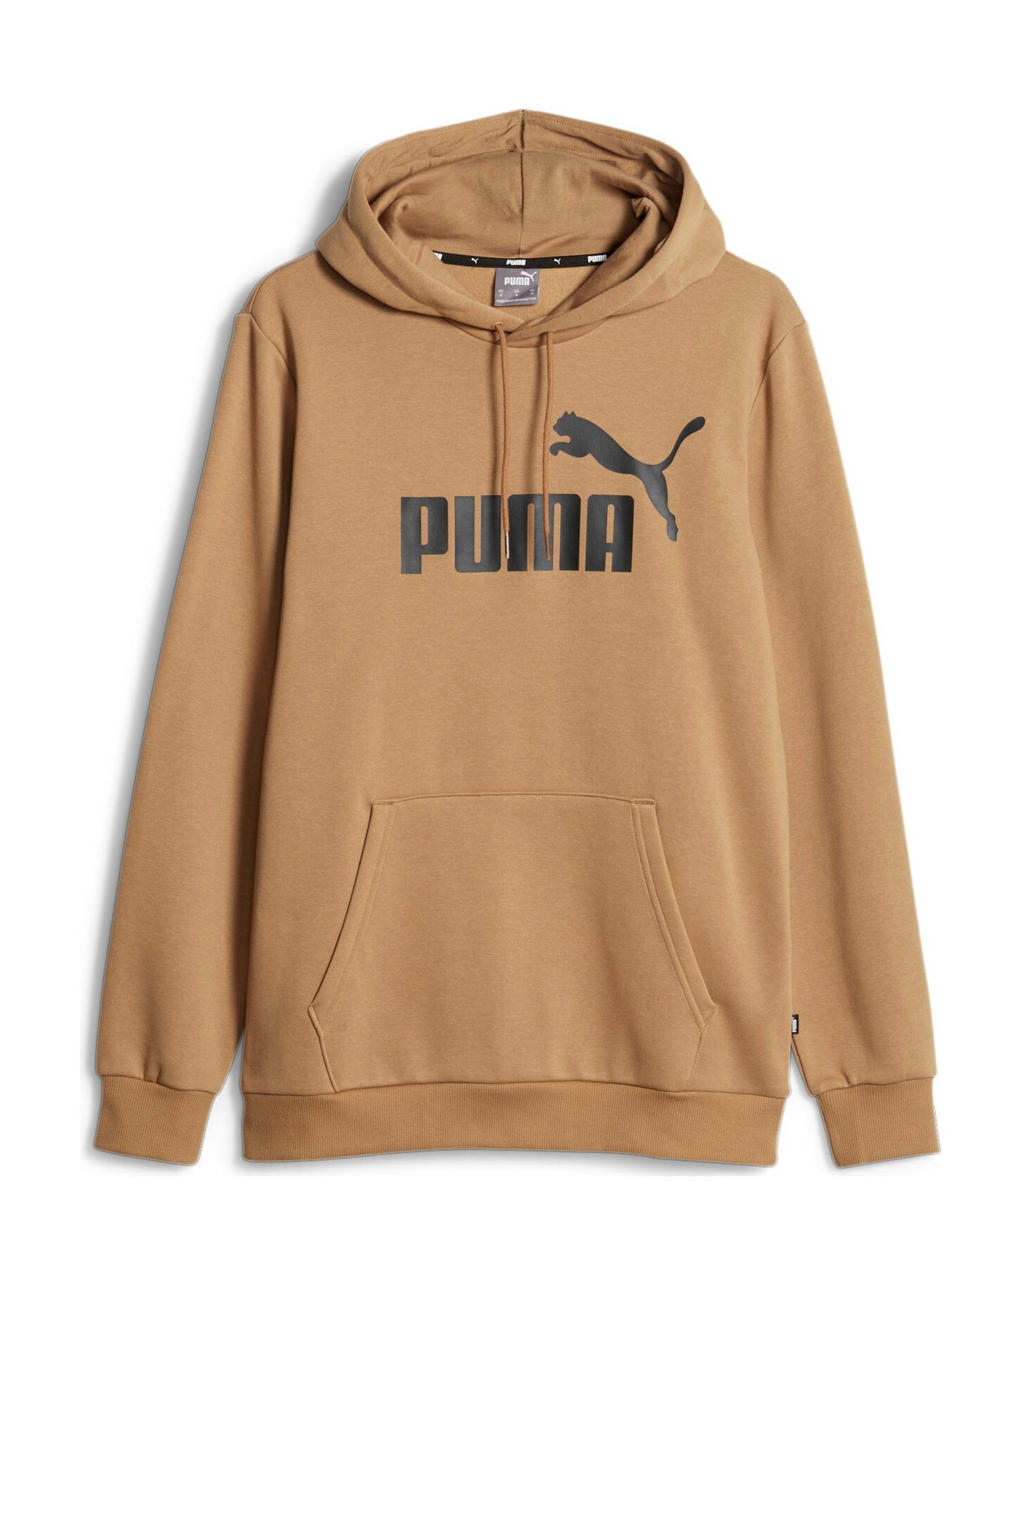 Lichtbruine heren Puma hoodie van sweat materiaal met logo dessin, lange mouwen en capuchon